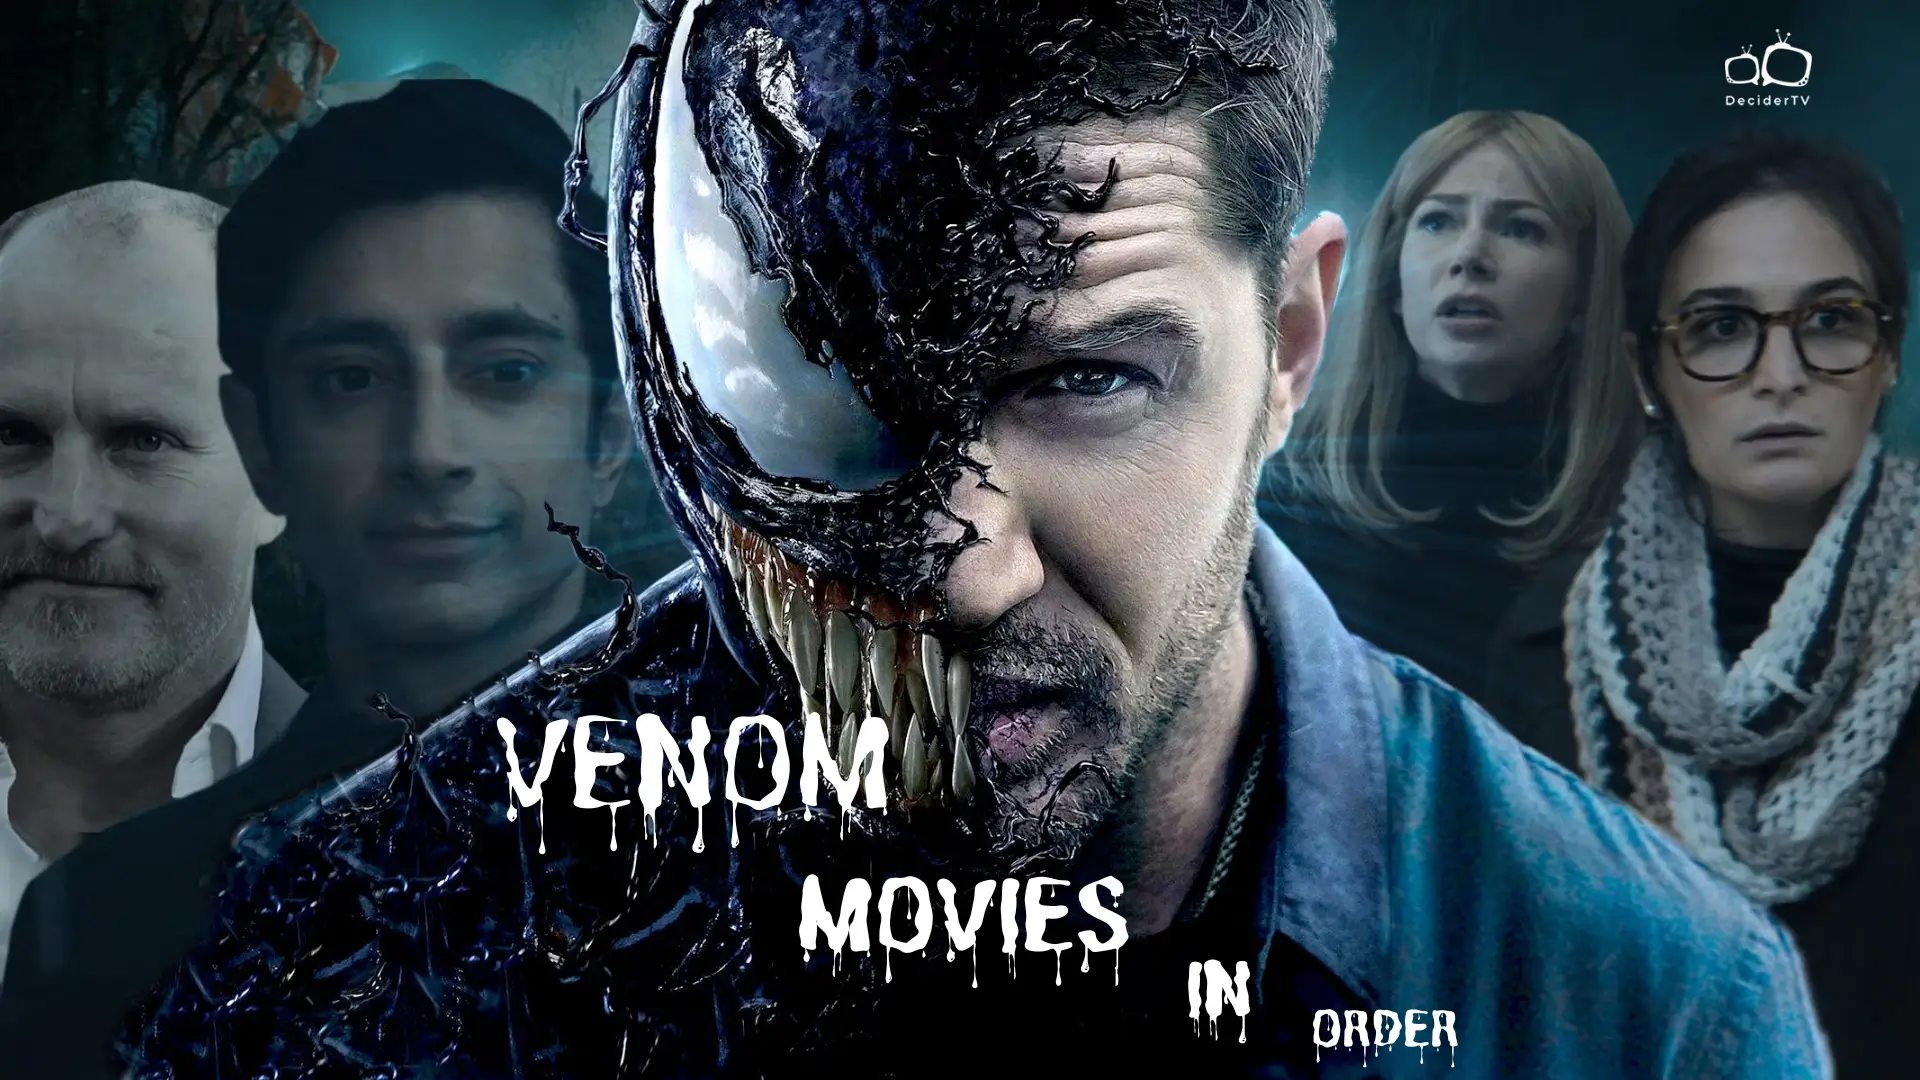 Venom Movies in Order